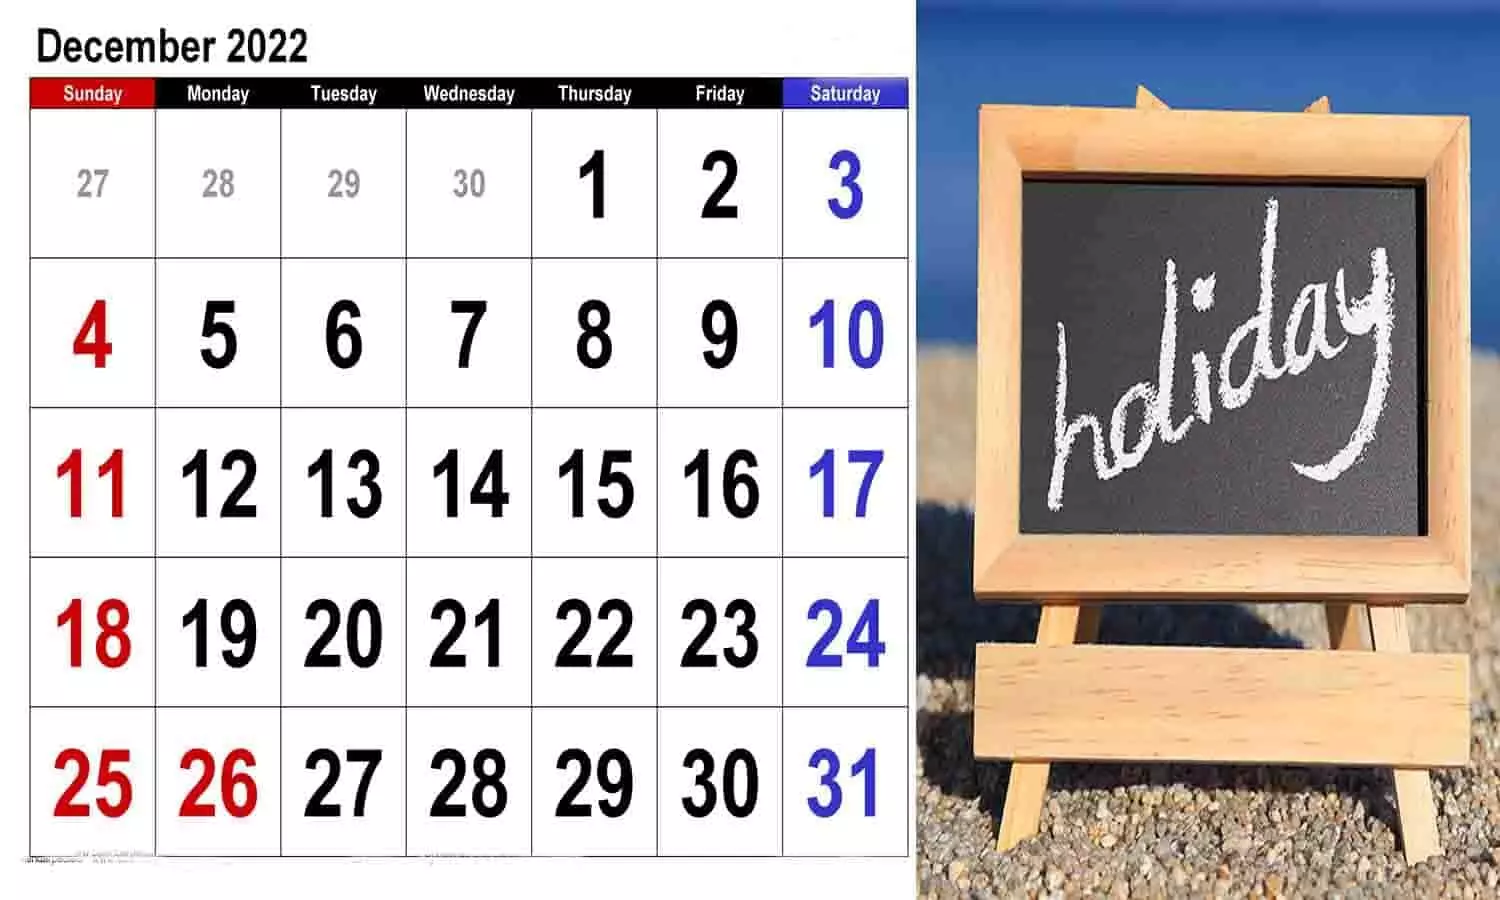 MP Holidays Calendar December 2022: सरकारी छुट्टियों का कैलेंडर सरकार ने किया जारी, हॉलिडे List के बारे में विस्तार से जाने